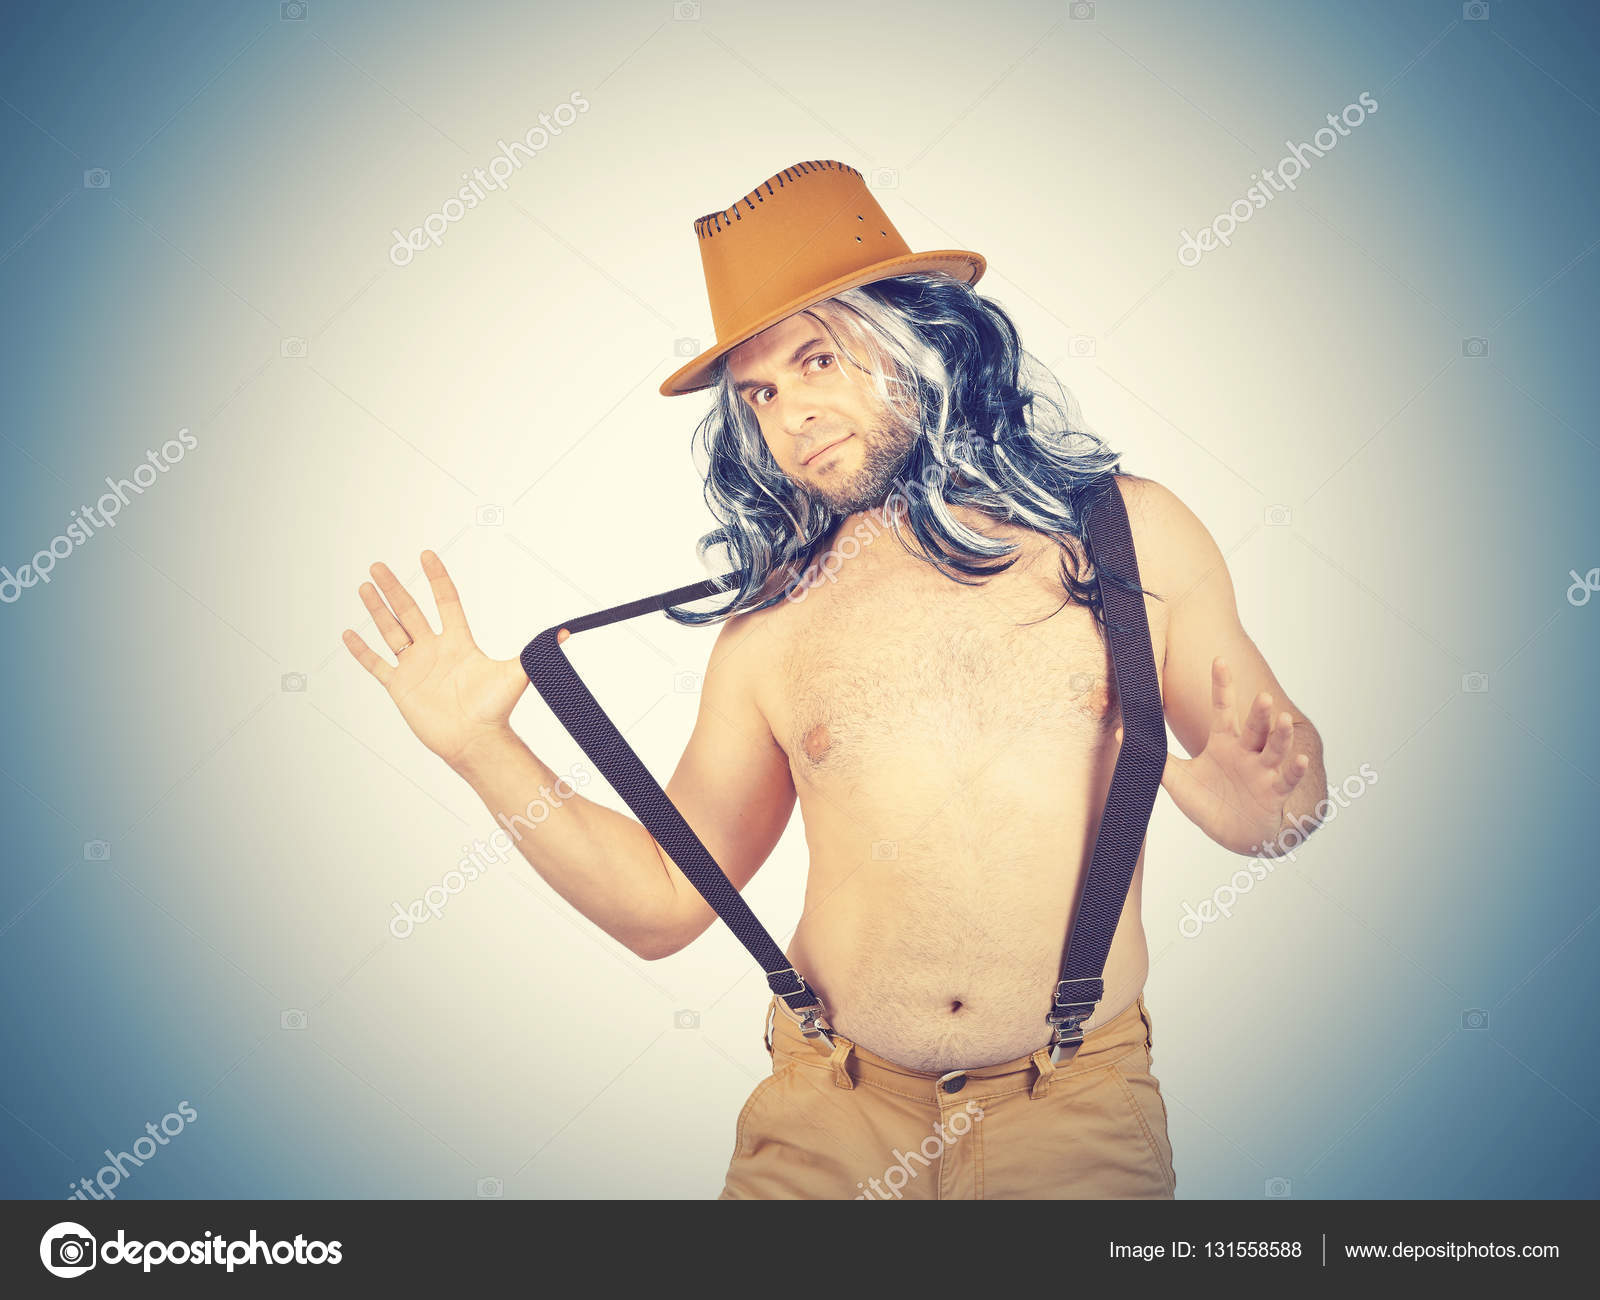 Funny man in hat Topless — Stock Photo © volkovslava #131558588